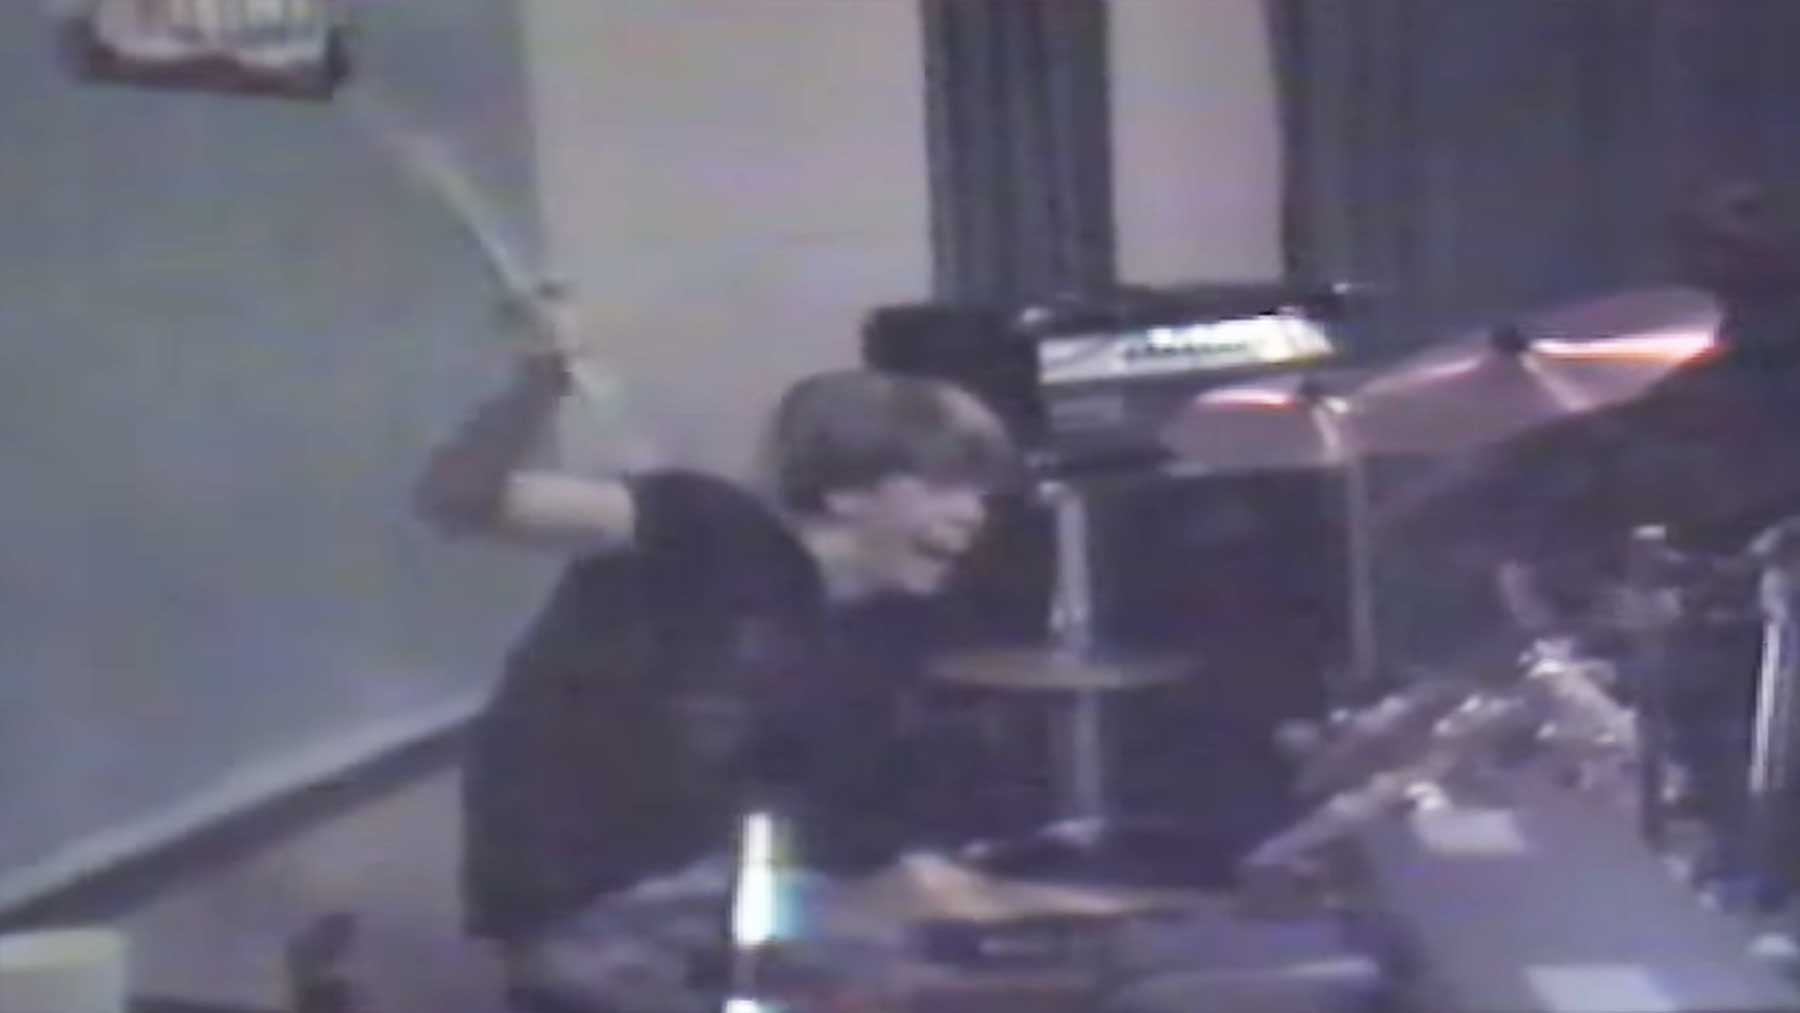 Dave Grohl spielt 1985 Schlagzeug in High School Band Mission Impossible Dave-Grohl-Schlagzeug-1985-mission-impossoble-high-school-band 